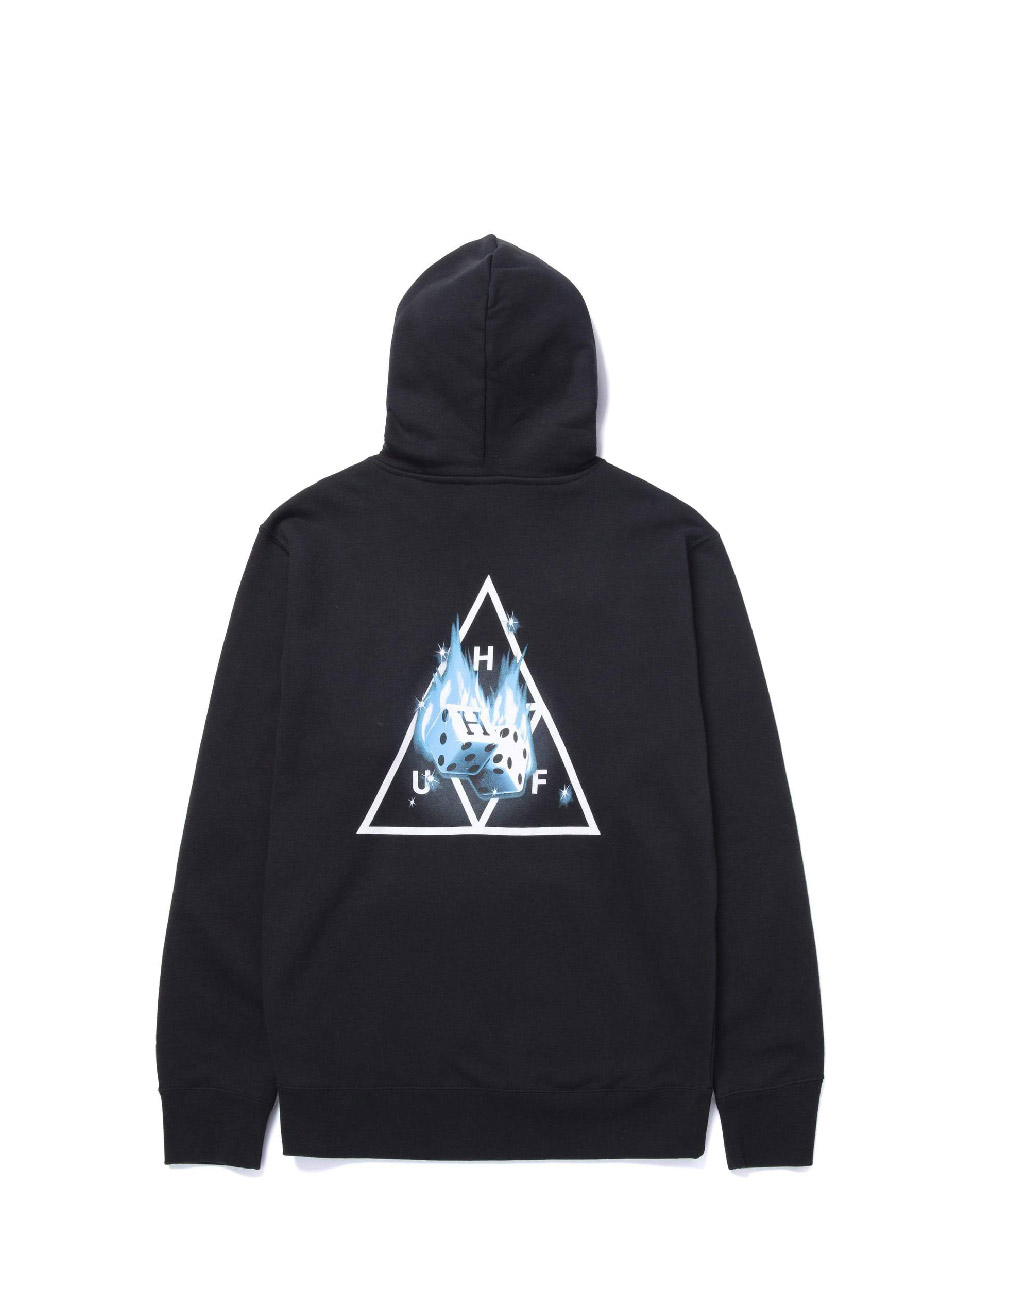 HUF – Hot dice triple triangle hoodie